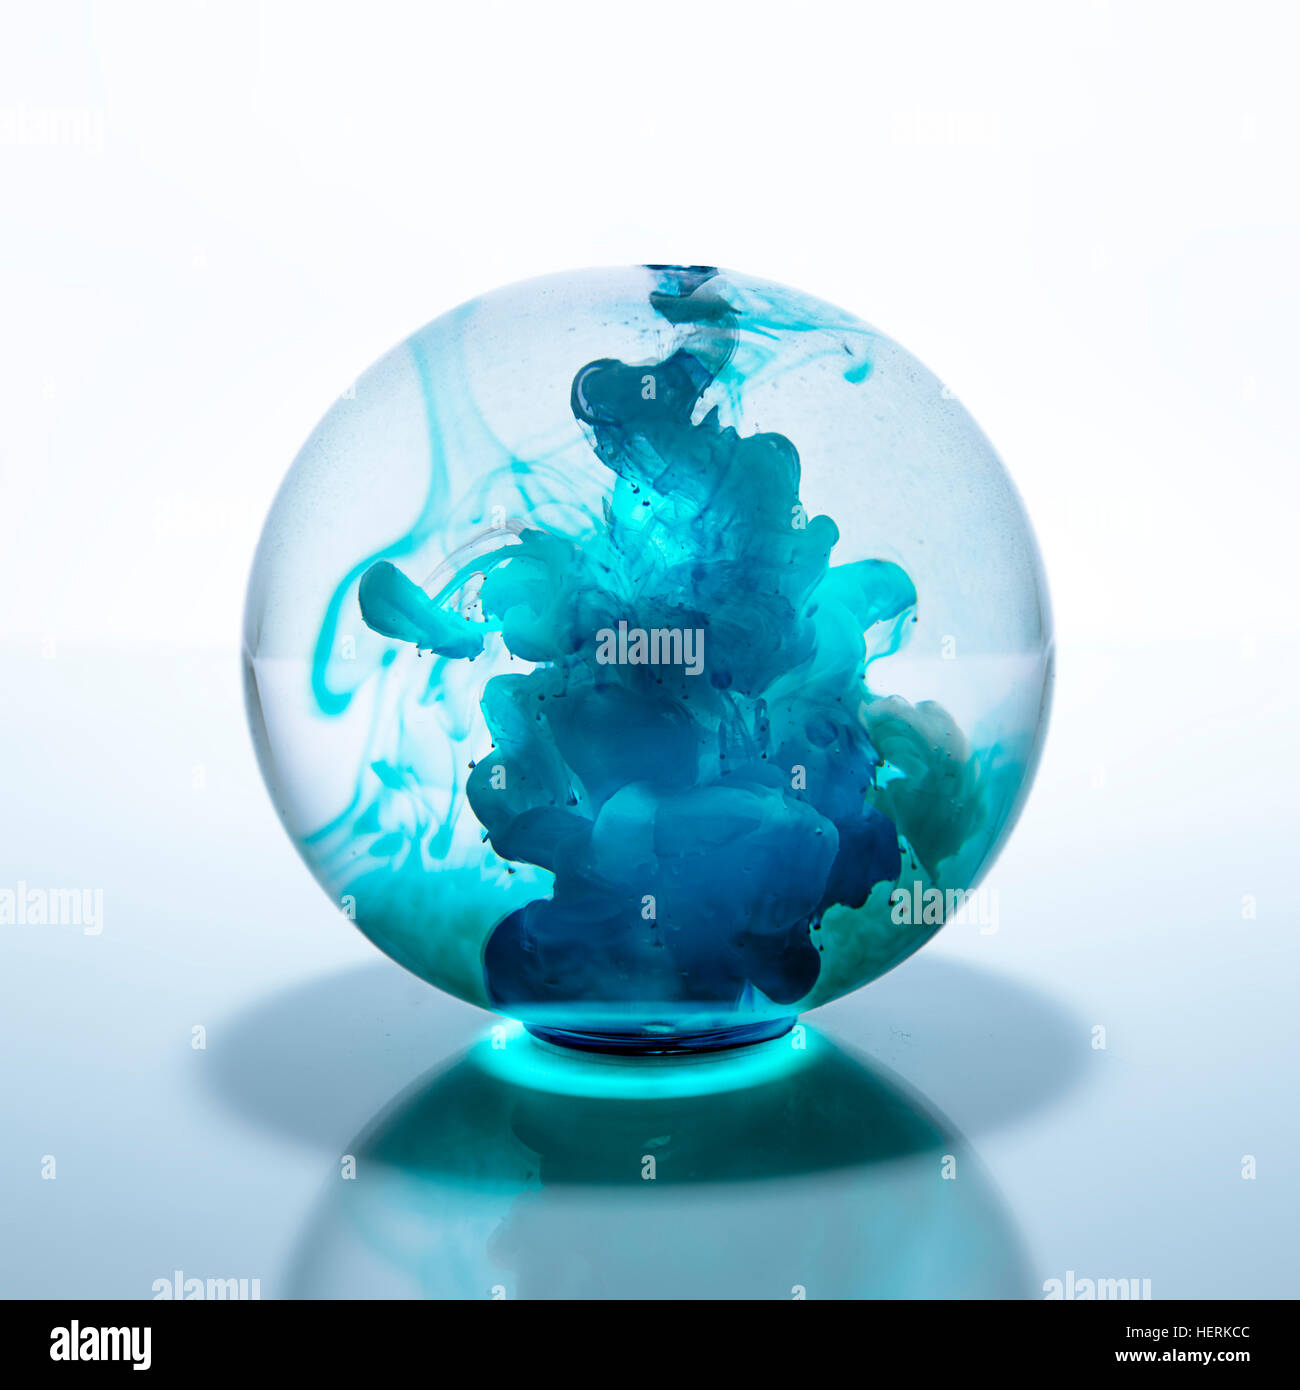 Boule de cristal remplie de peinture bleu aquarelle dans l'eau Banque D'Images